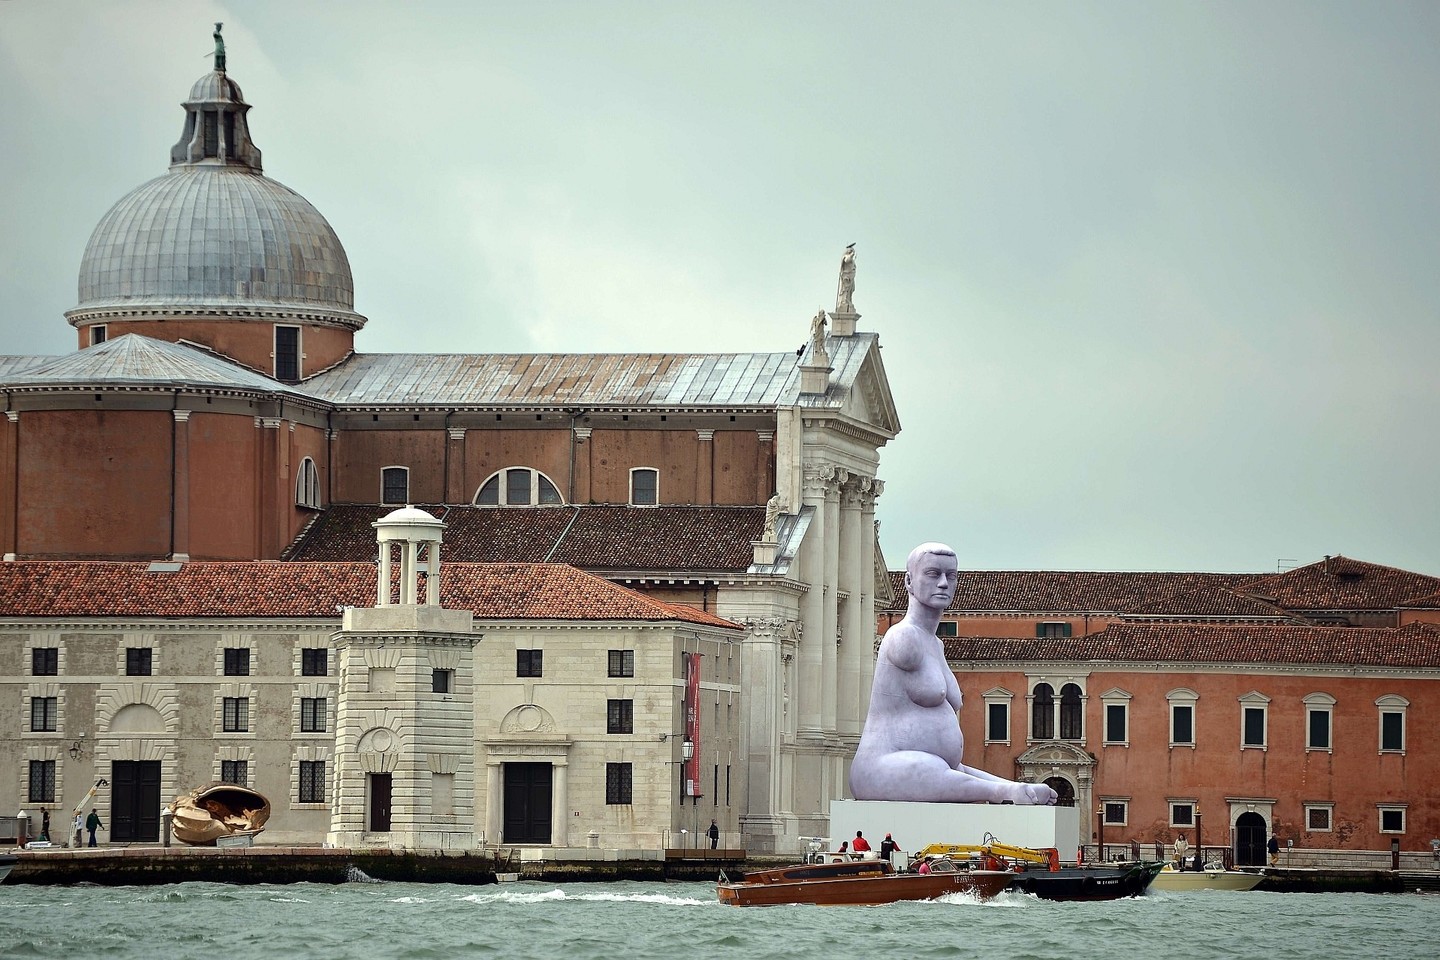 Romantiškoji Venecija Meno bienalės metu gerokai pasikeičia.<br>AFP/Scanpix nuotr.